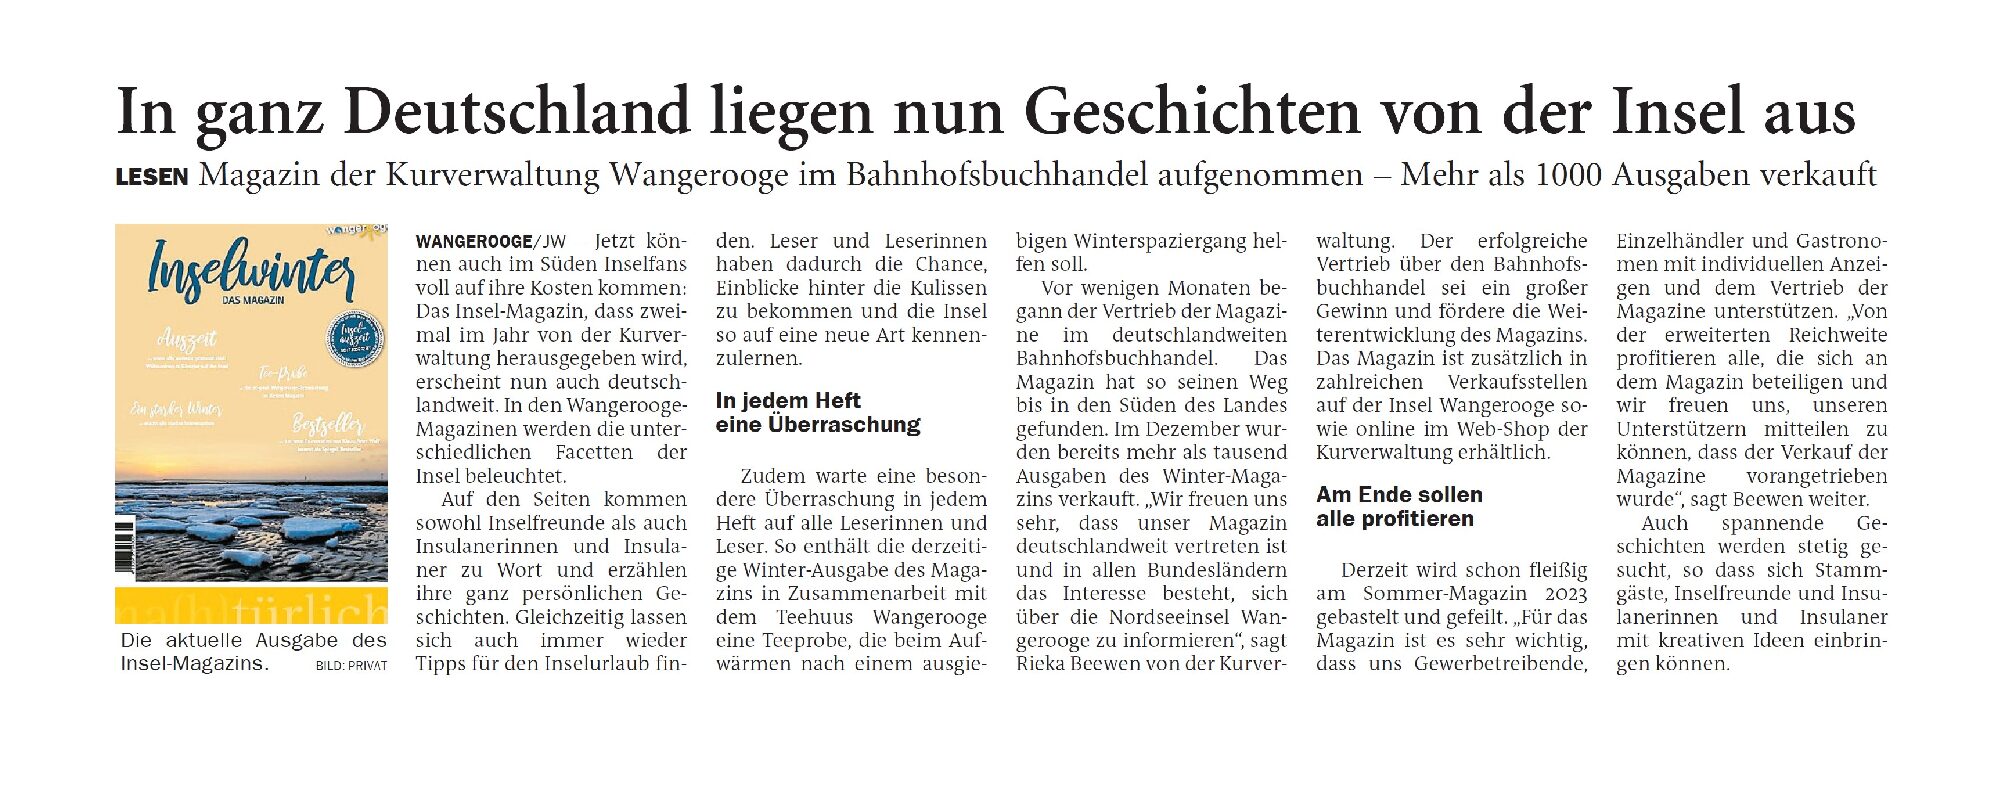 25.01.2023 Jeversches Wochenblatt – In ganz Deutschland liegen nun Geschichten von der Insel aus